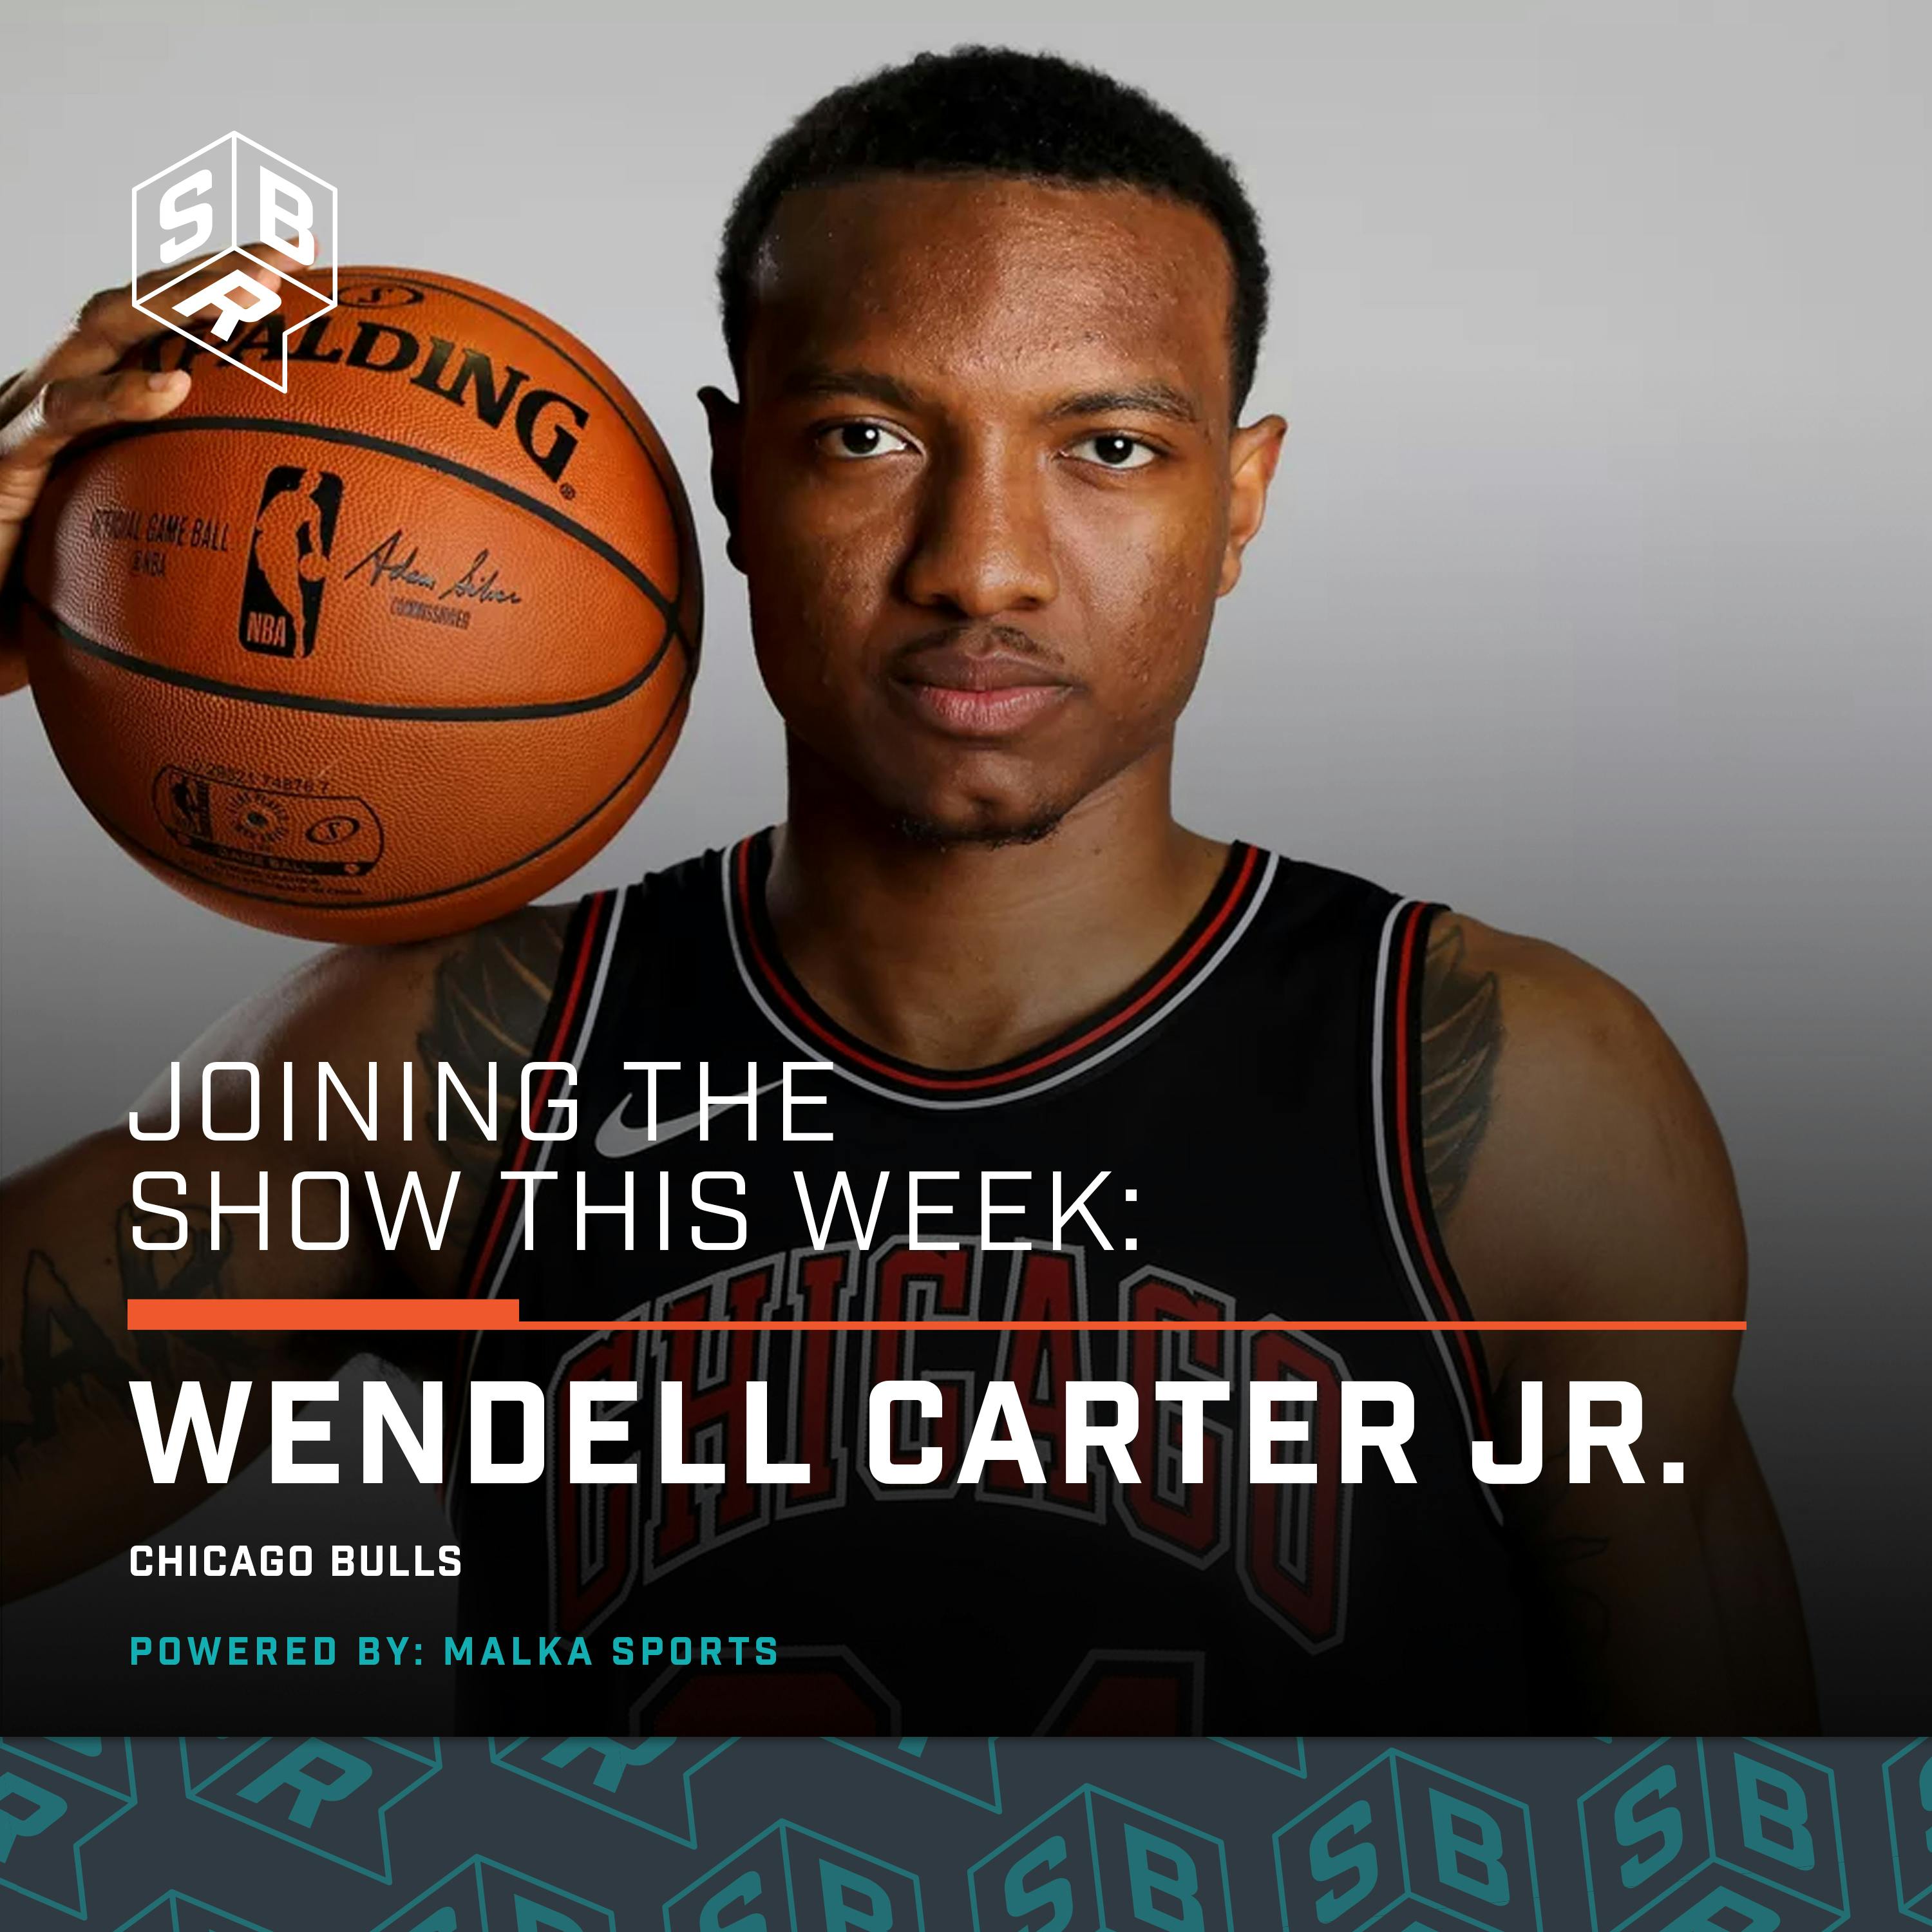 Wendell Carter Jr. (@WendellCarter34), Chicago Bulls